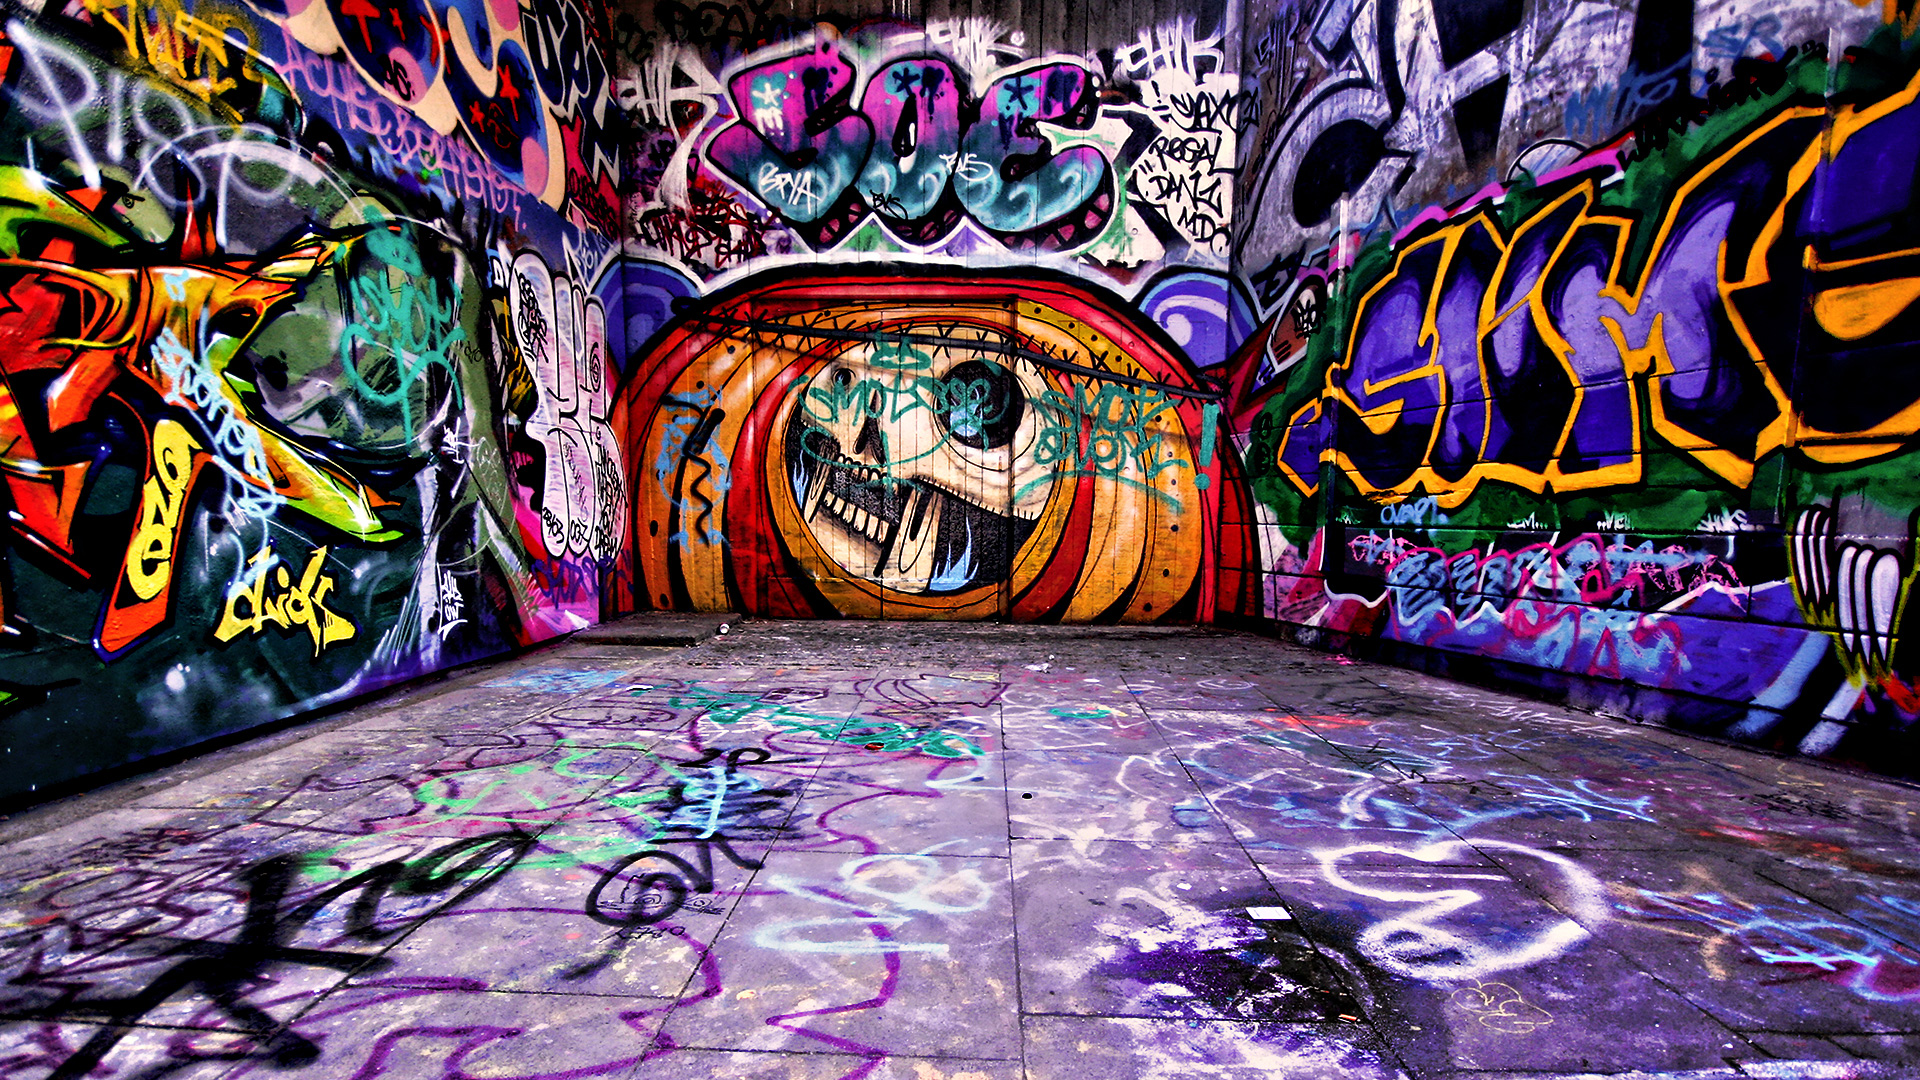 historia do graffiti e graffiti no brasil (3)